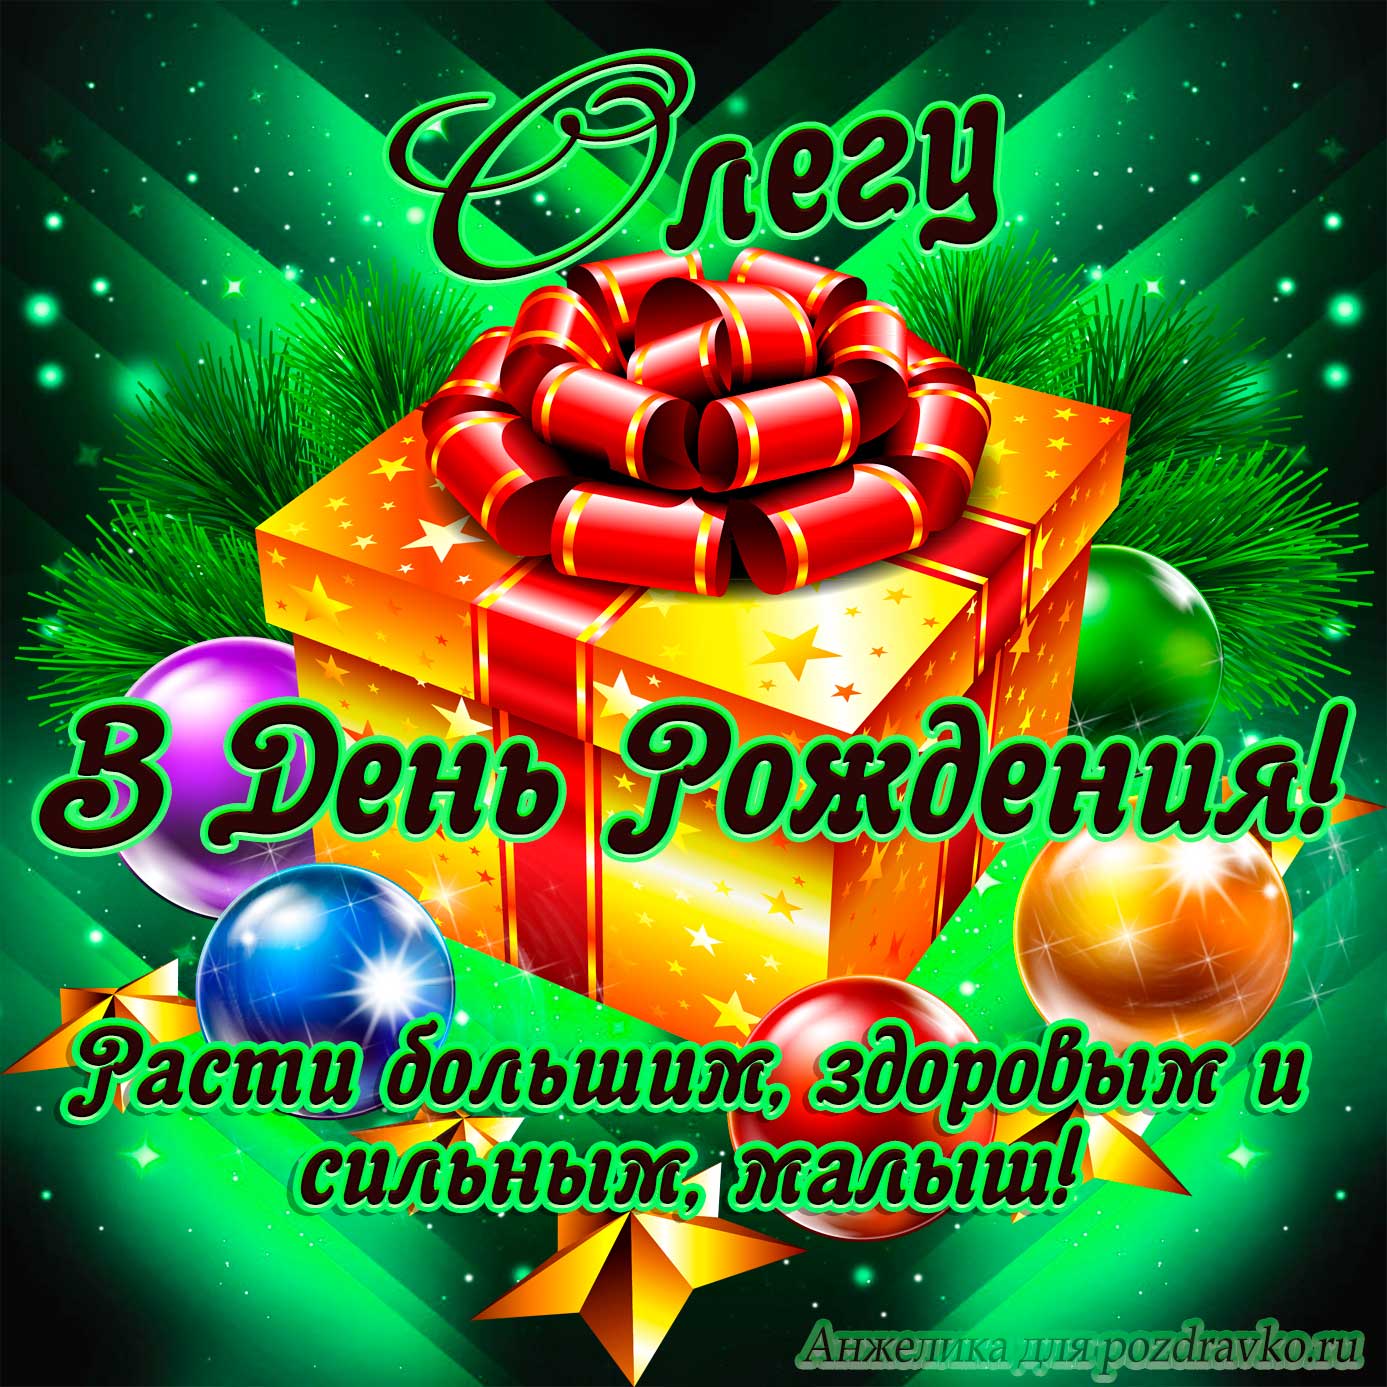 Открытка - Олегу в День Рождения, расти большим здоровым и сильным. Скачать бесплатно или отправить картинку.